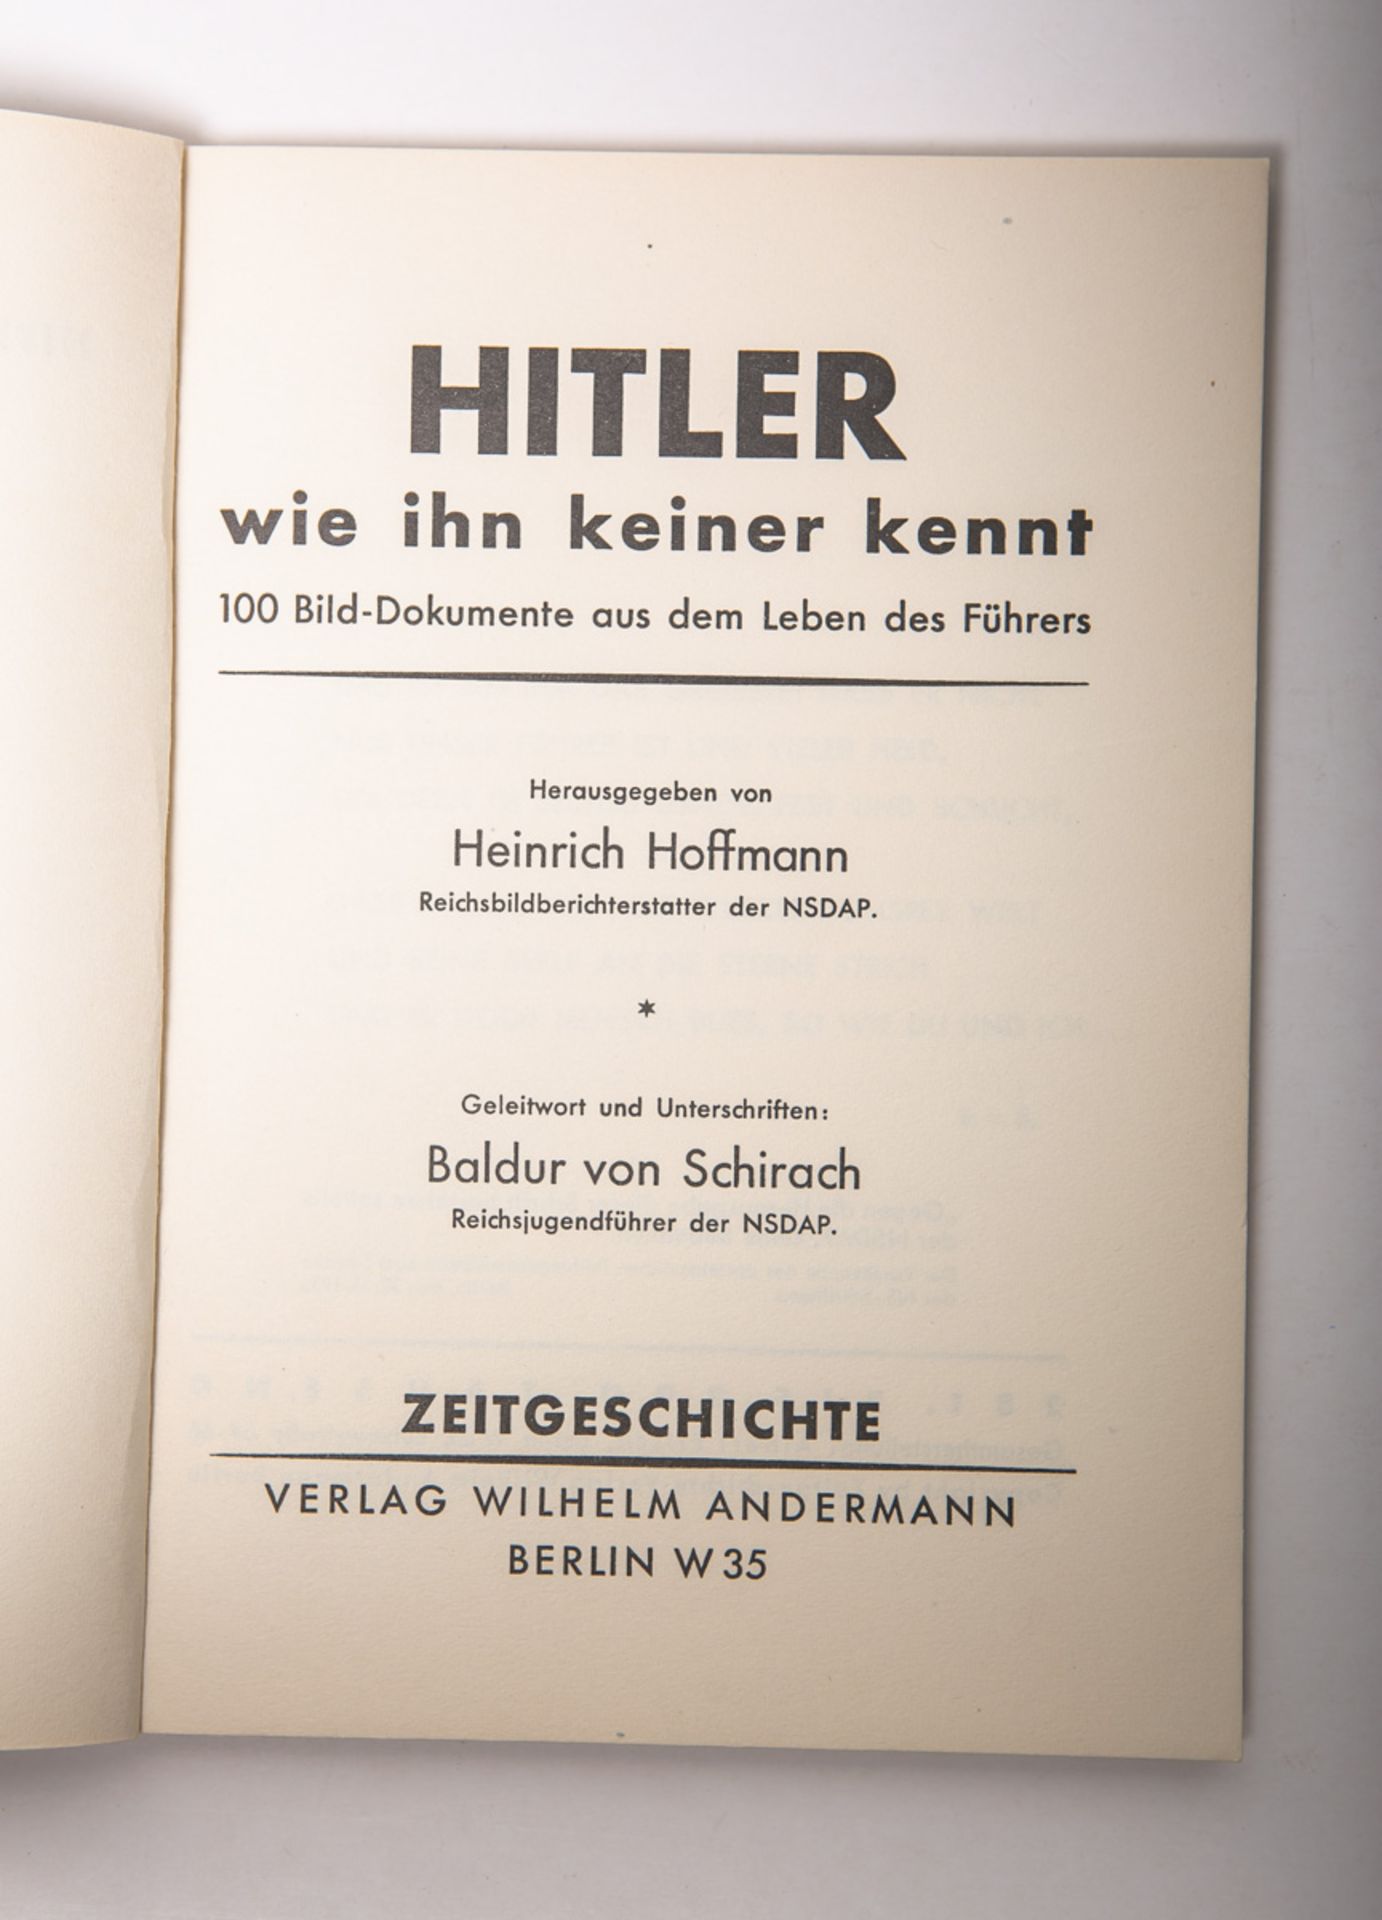 Hoffmann, Heinrich (Hrsg.), "Hitler wie ihn keiner kennt" - Image 3 of 4